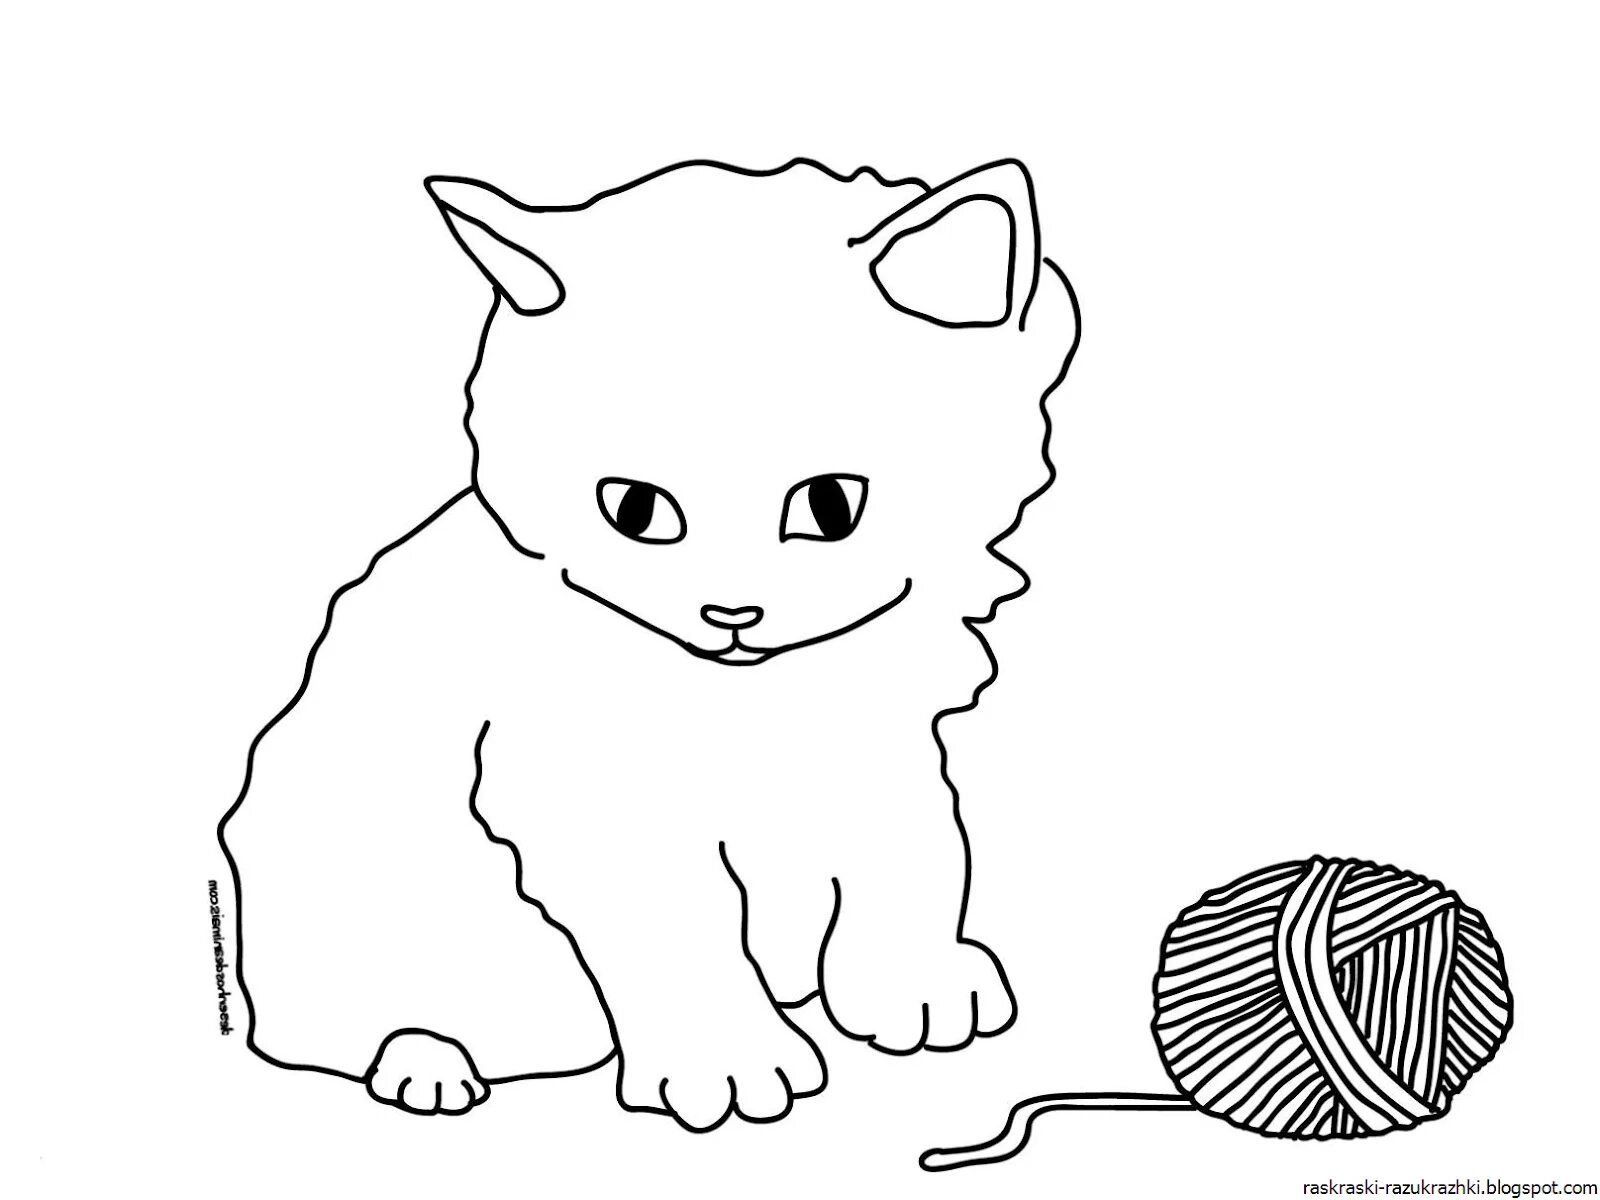 Раскраска остроумный кот для детей